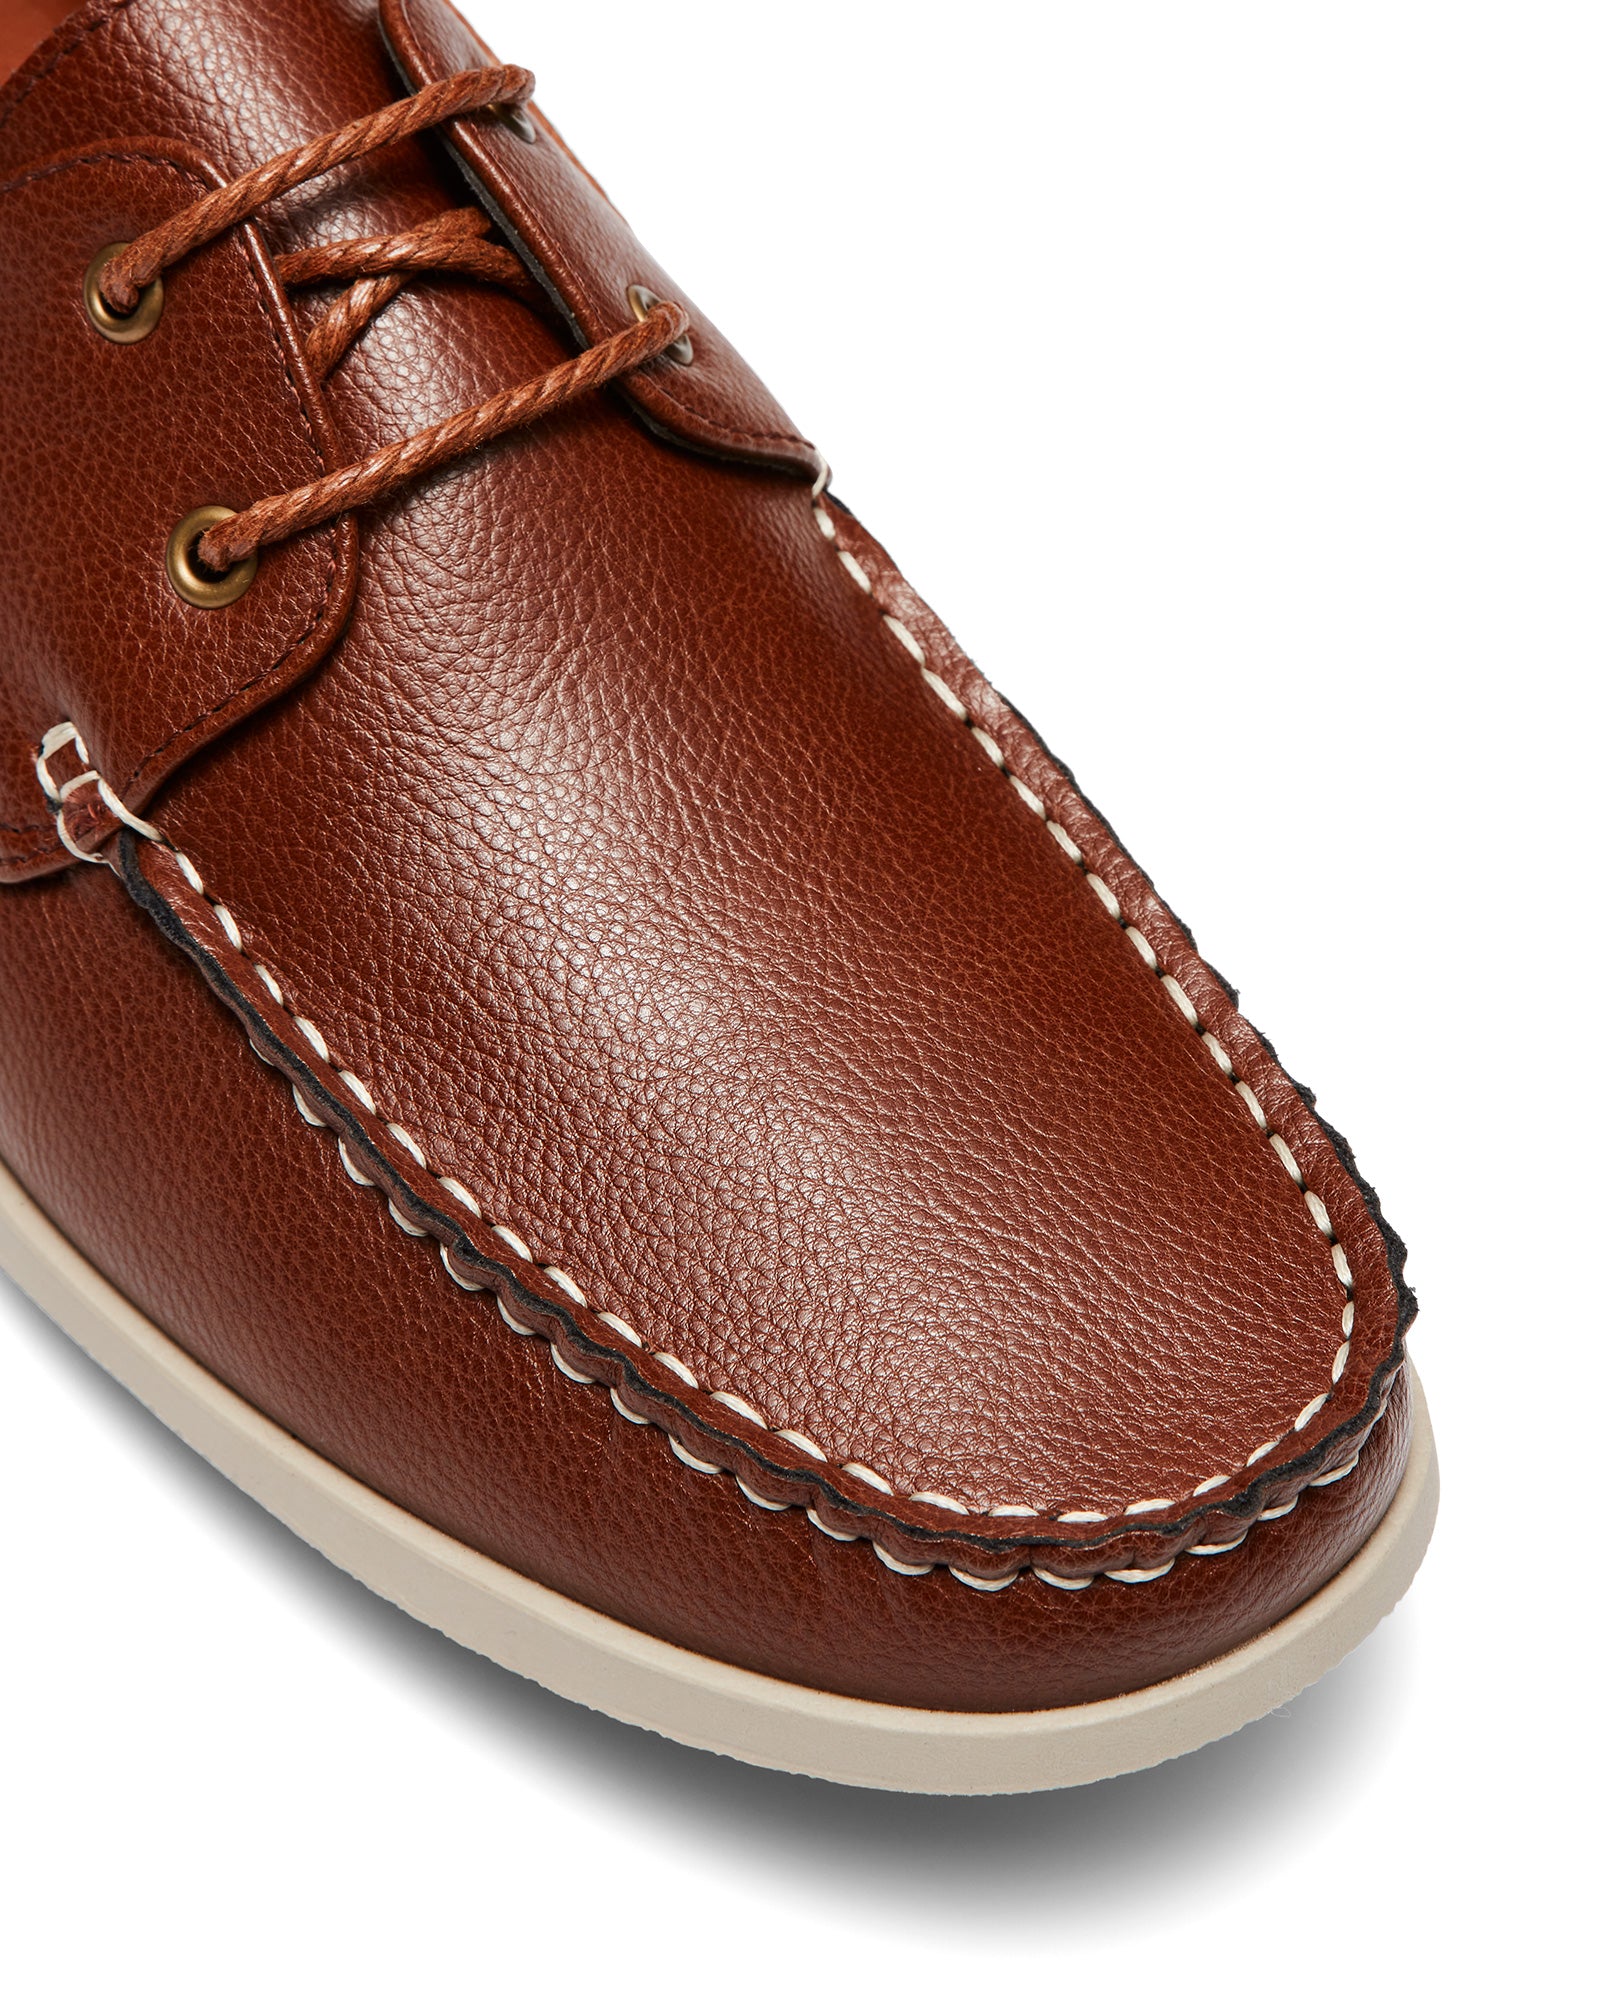 Uncut Shoes Hemsworth Tan | Men's Boat Shoe | Sneaker | Deck Shoe